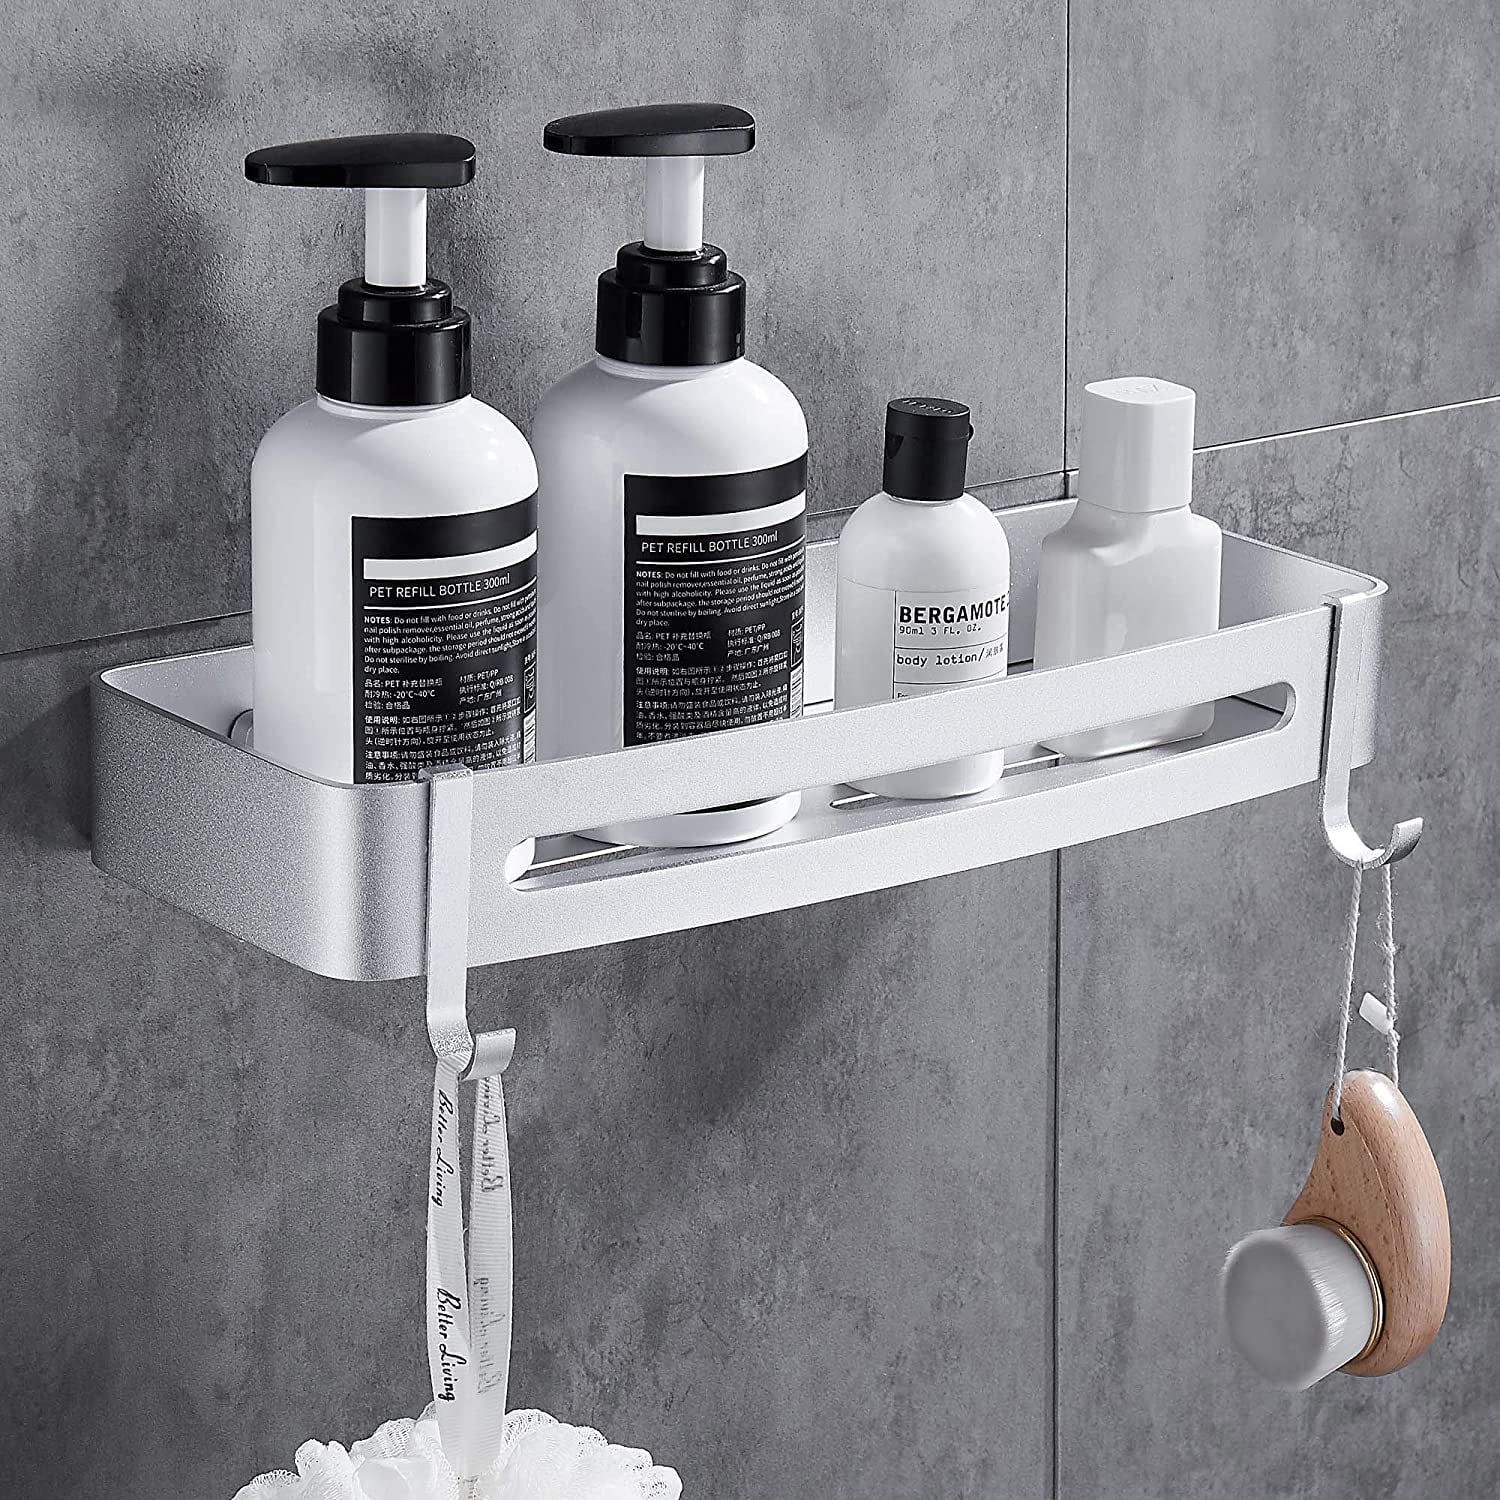 Details about   Triangular Shower Shelf Caddy Corner Bath Storage Rack Organizer Holder Bathroom 